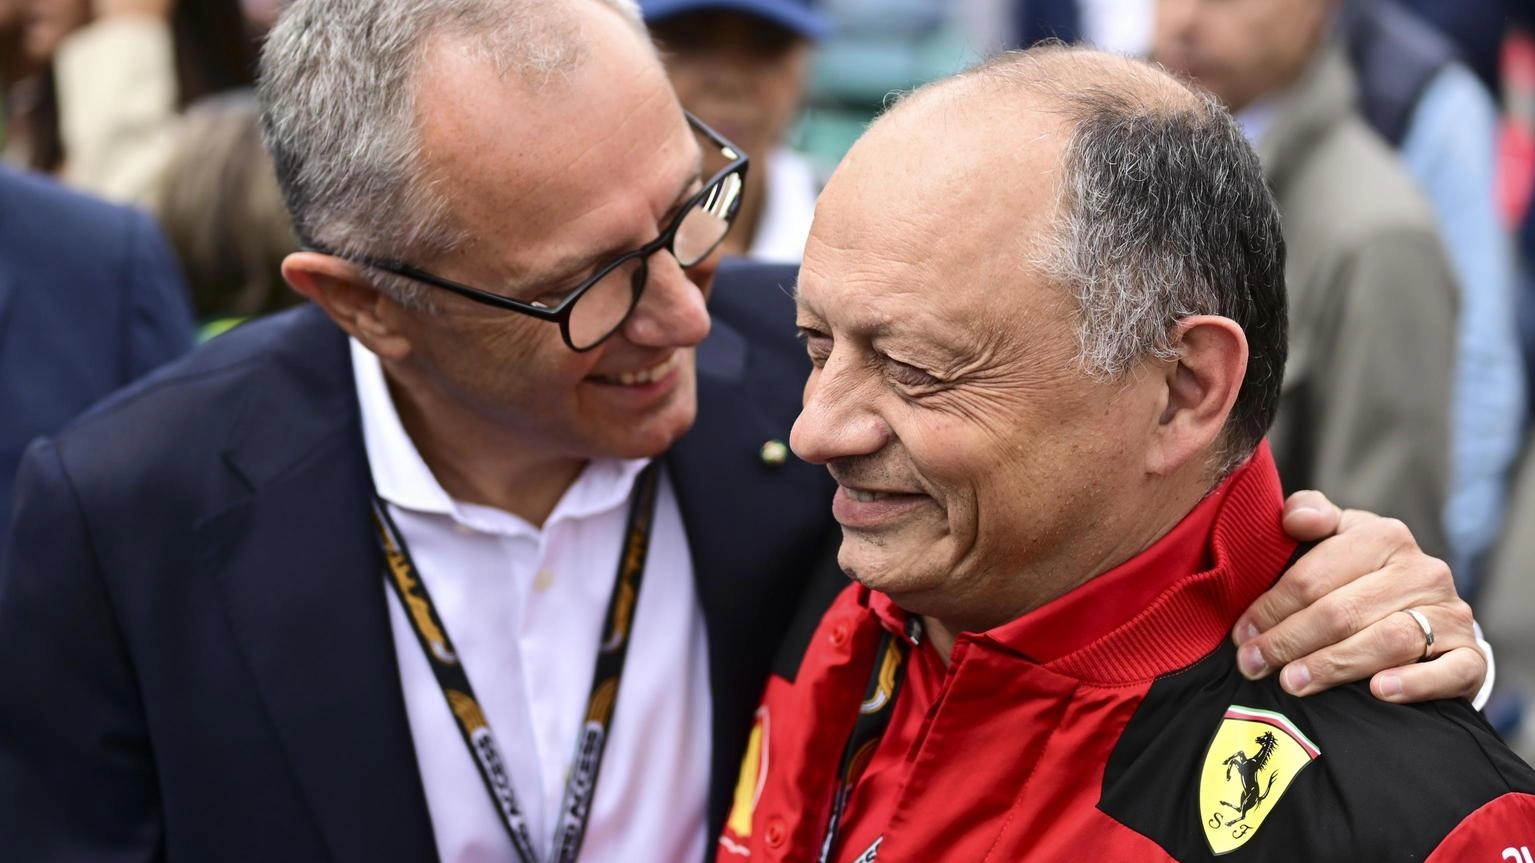 Il manager imolese: "Non vedo l’ora di ritrovare il Gran premio in Romagna. La Ferrari ha fatto un bel salto in avanti, giusta la mossa di prendere Hamilton".